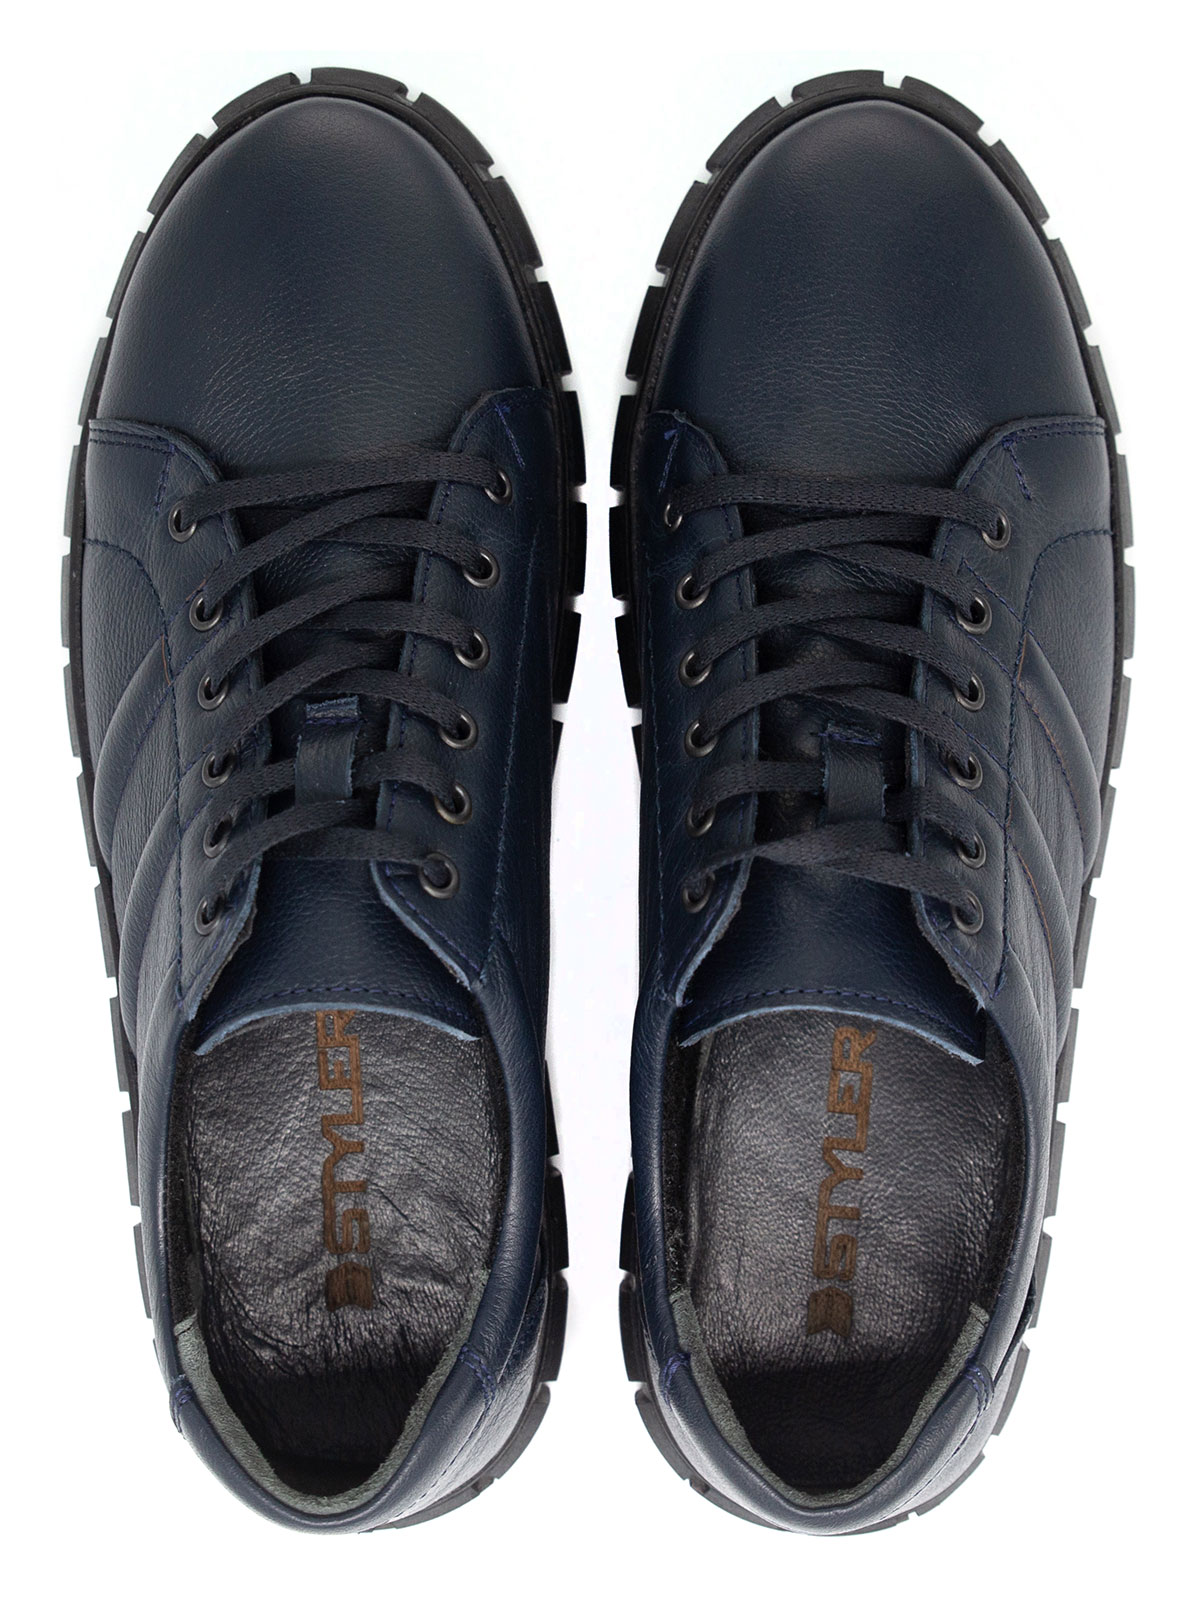 Σκούρα μπλε αθλητικά δερμάτινα παπούτσια - 81098 - € 41.62 img2